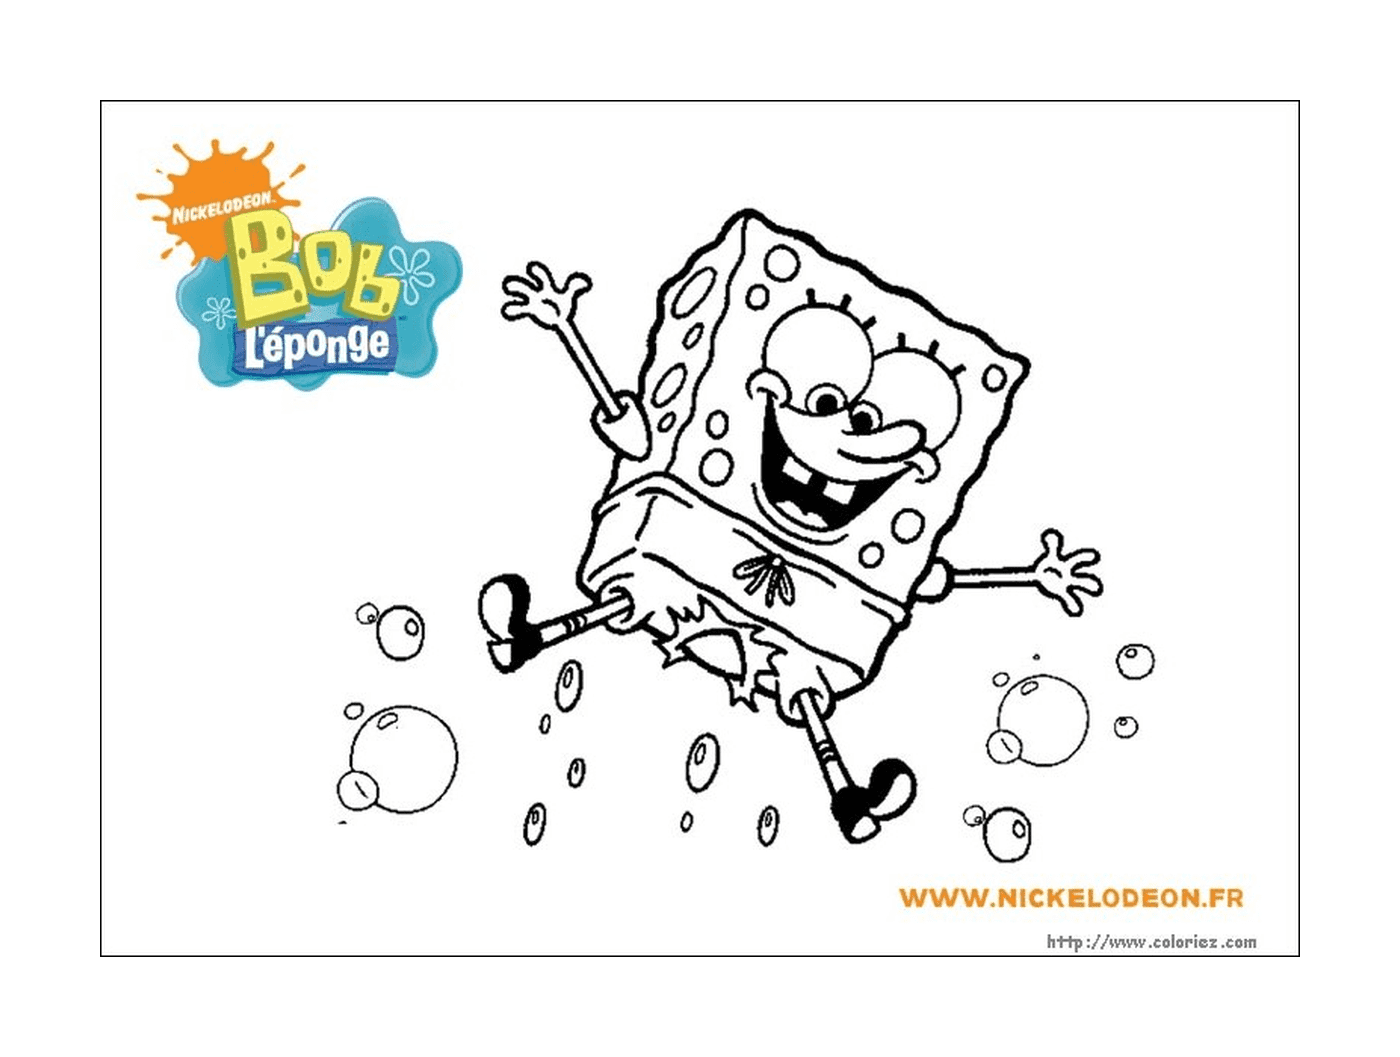  Immagine di un personaggio di Sponge Bob 